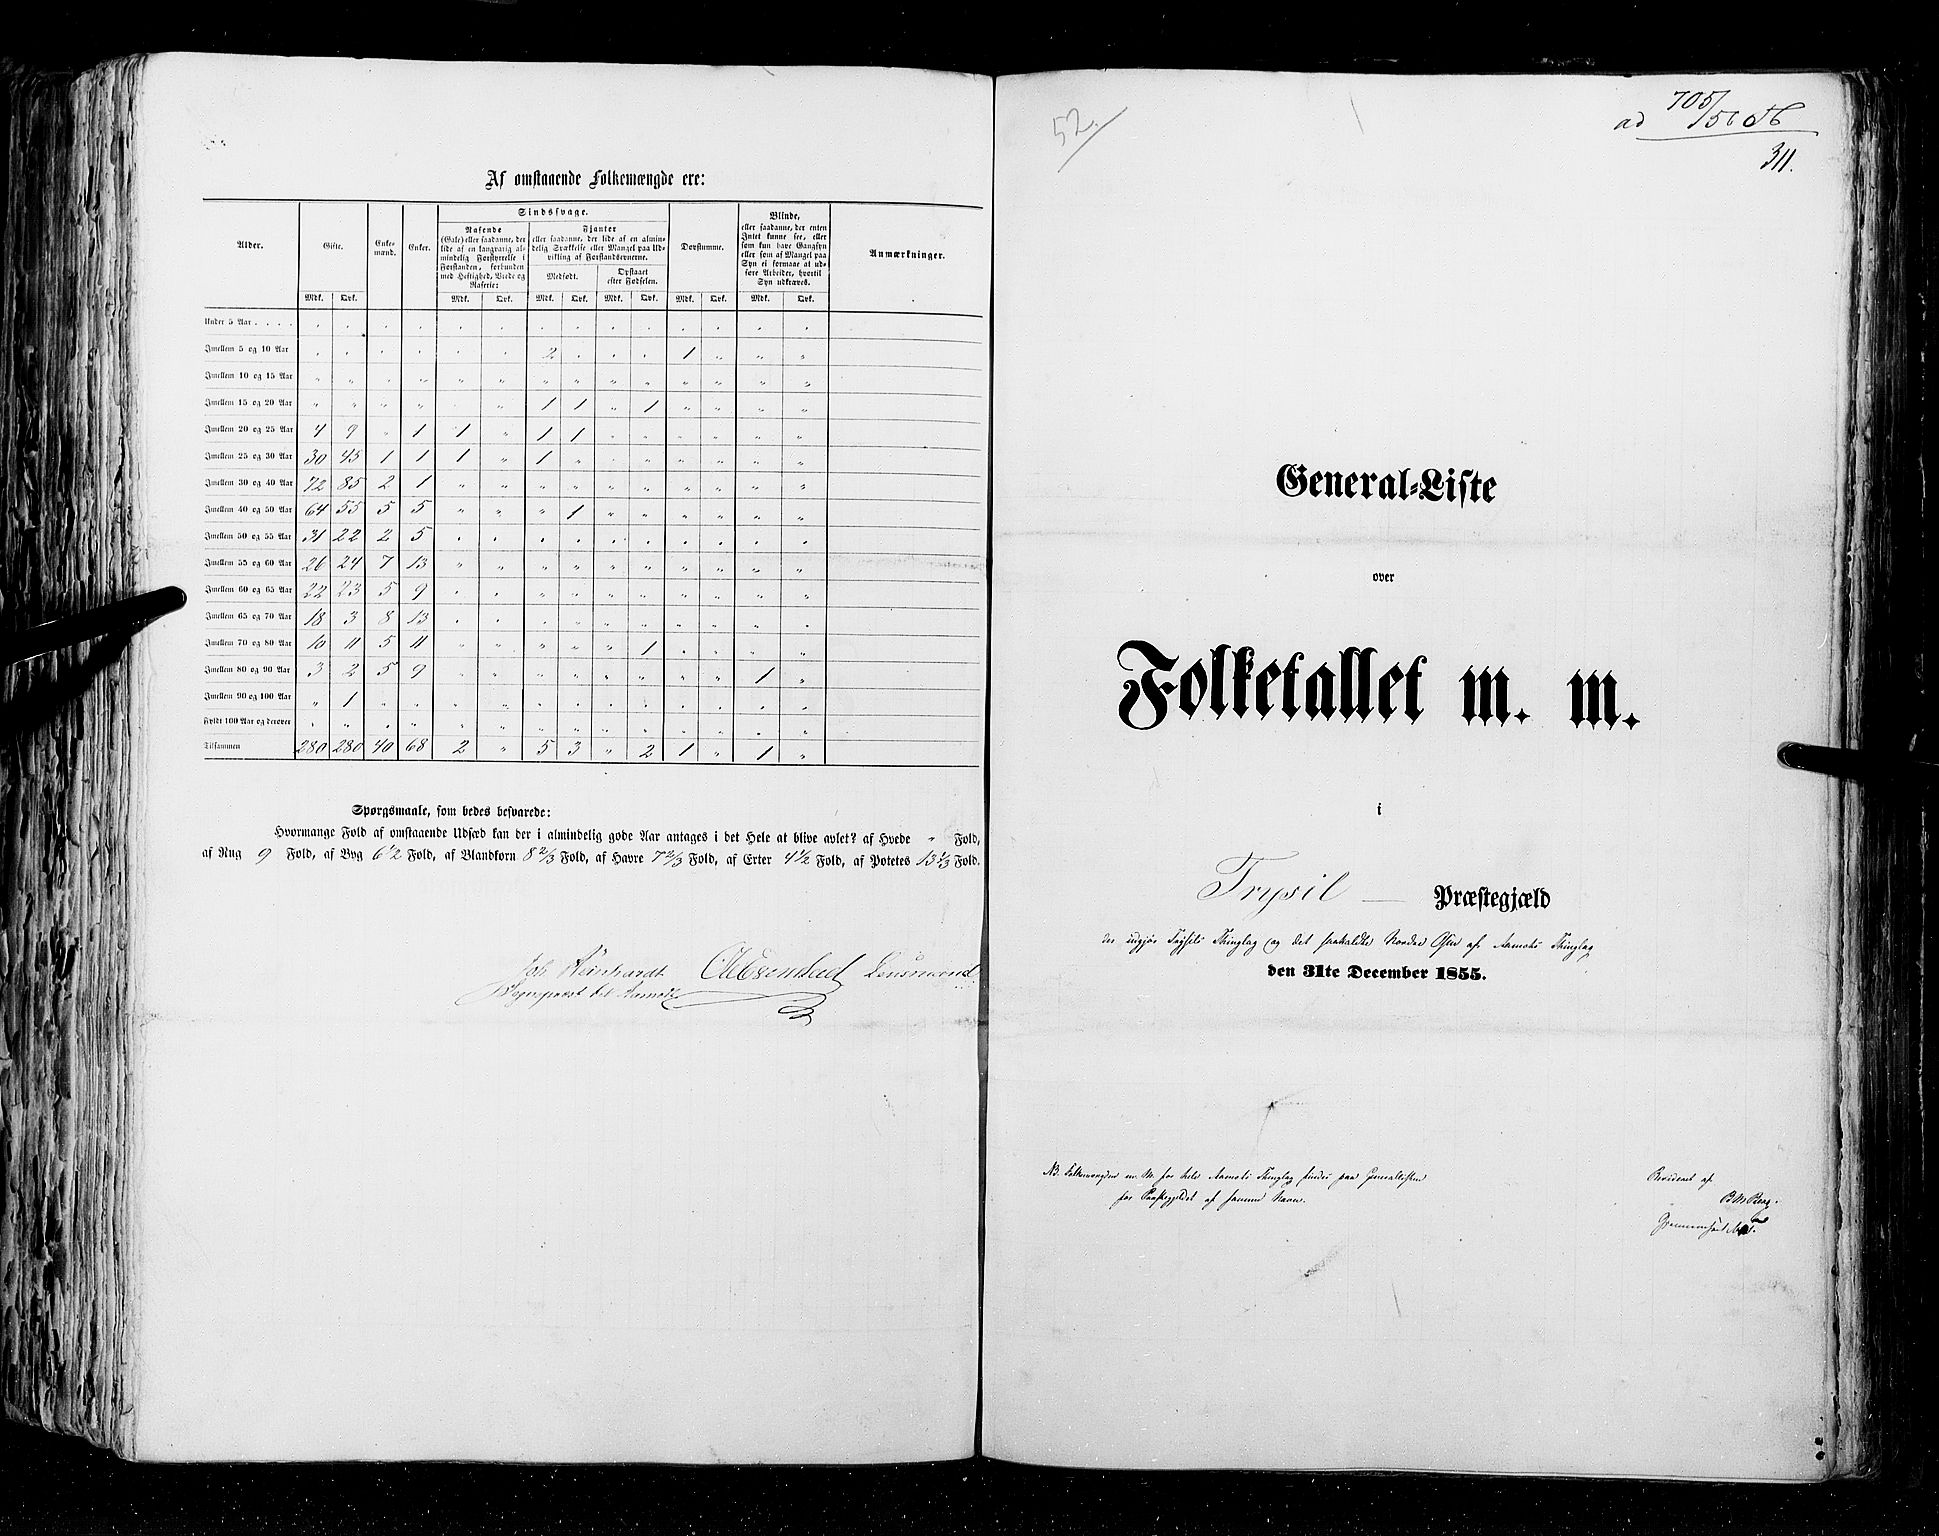 RA, Folketellingen 1855, bind 1: Akershus amt, Smålenenes amt og Hedemarken amt, 1855, s. 311